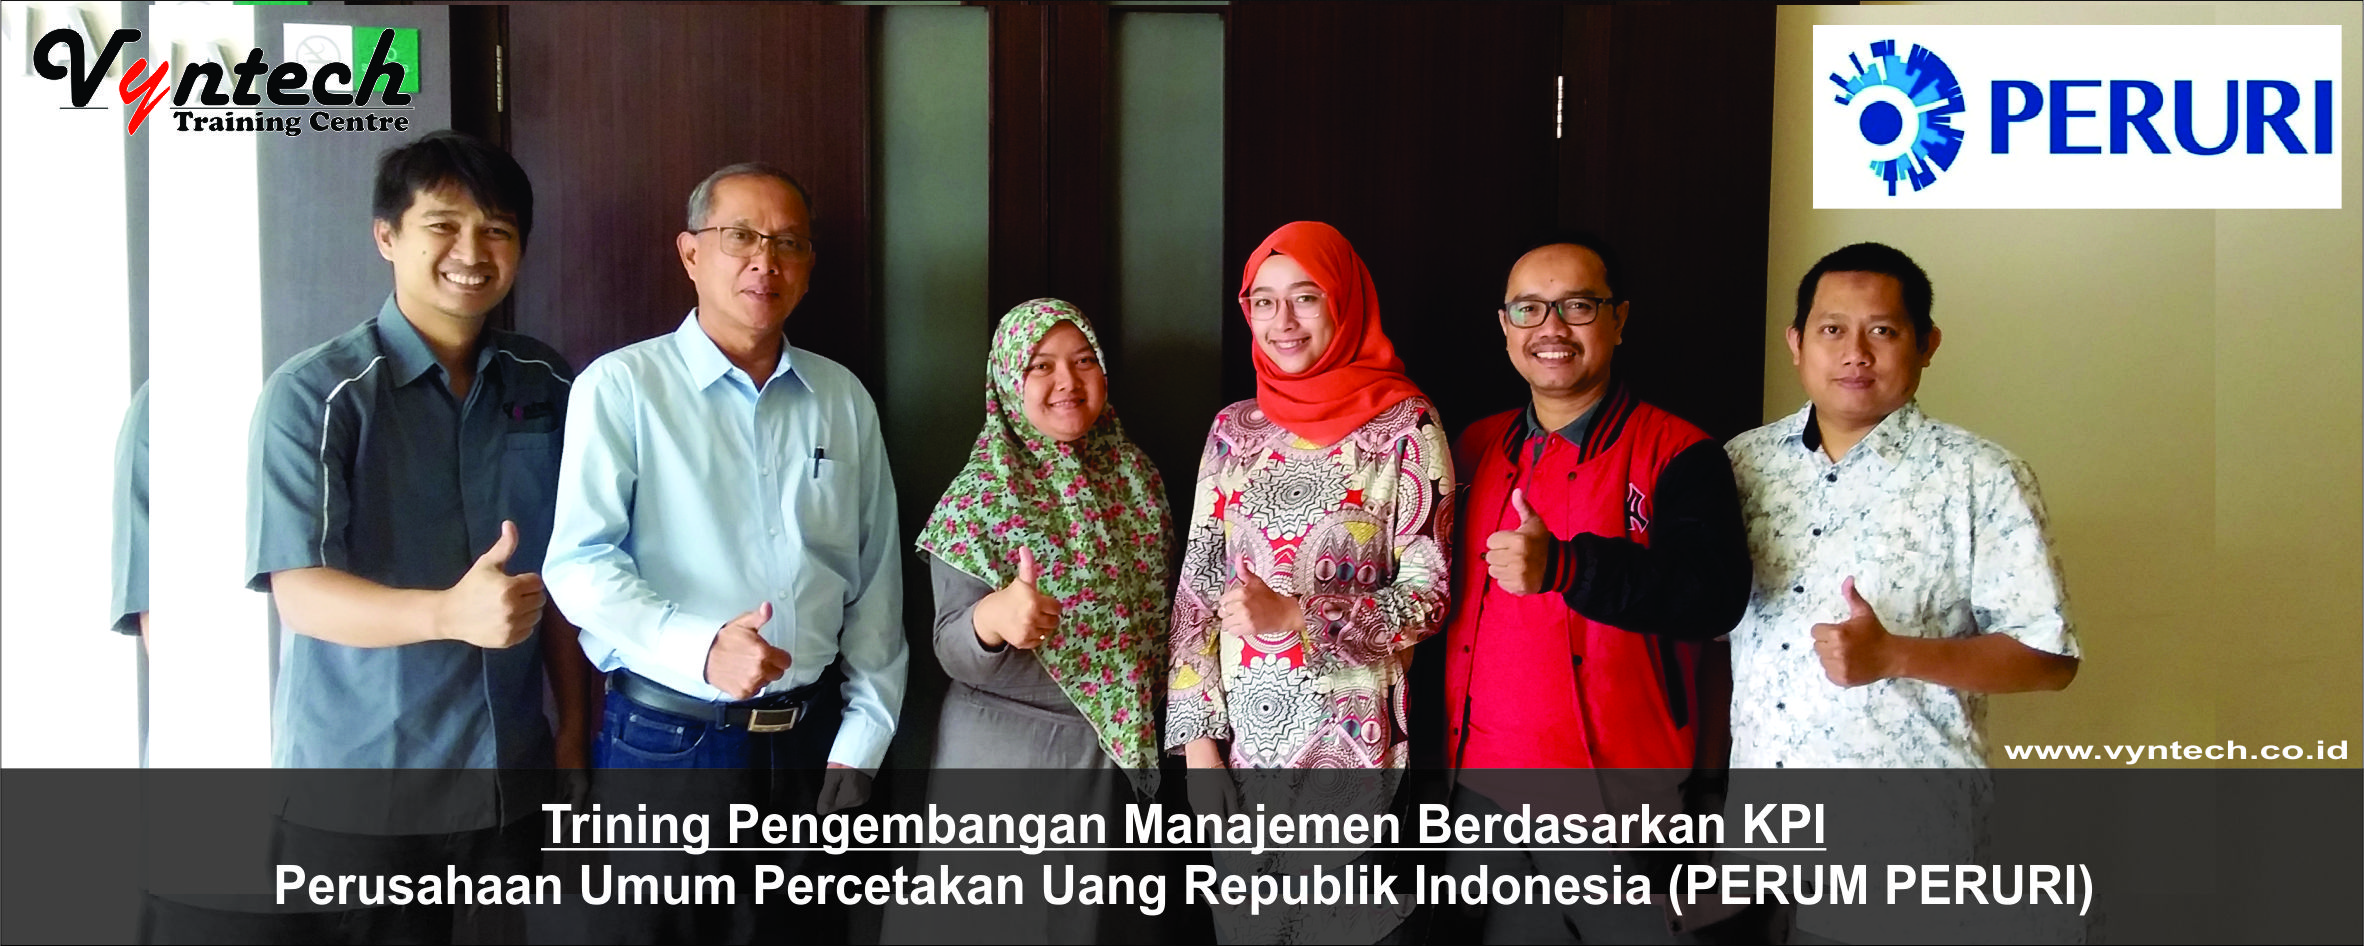 20180718 Trining Pengembangan Manajemen Berdasarkan KPI - Perusahaan Umum Percetakan Uang Republik Indonesia (PERUM PERURI)